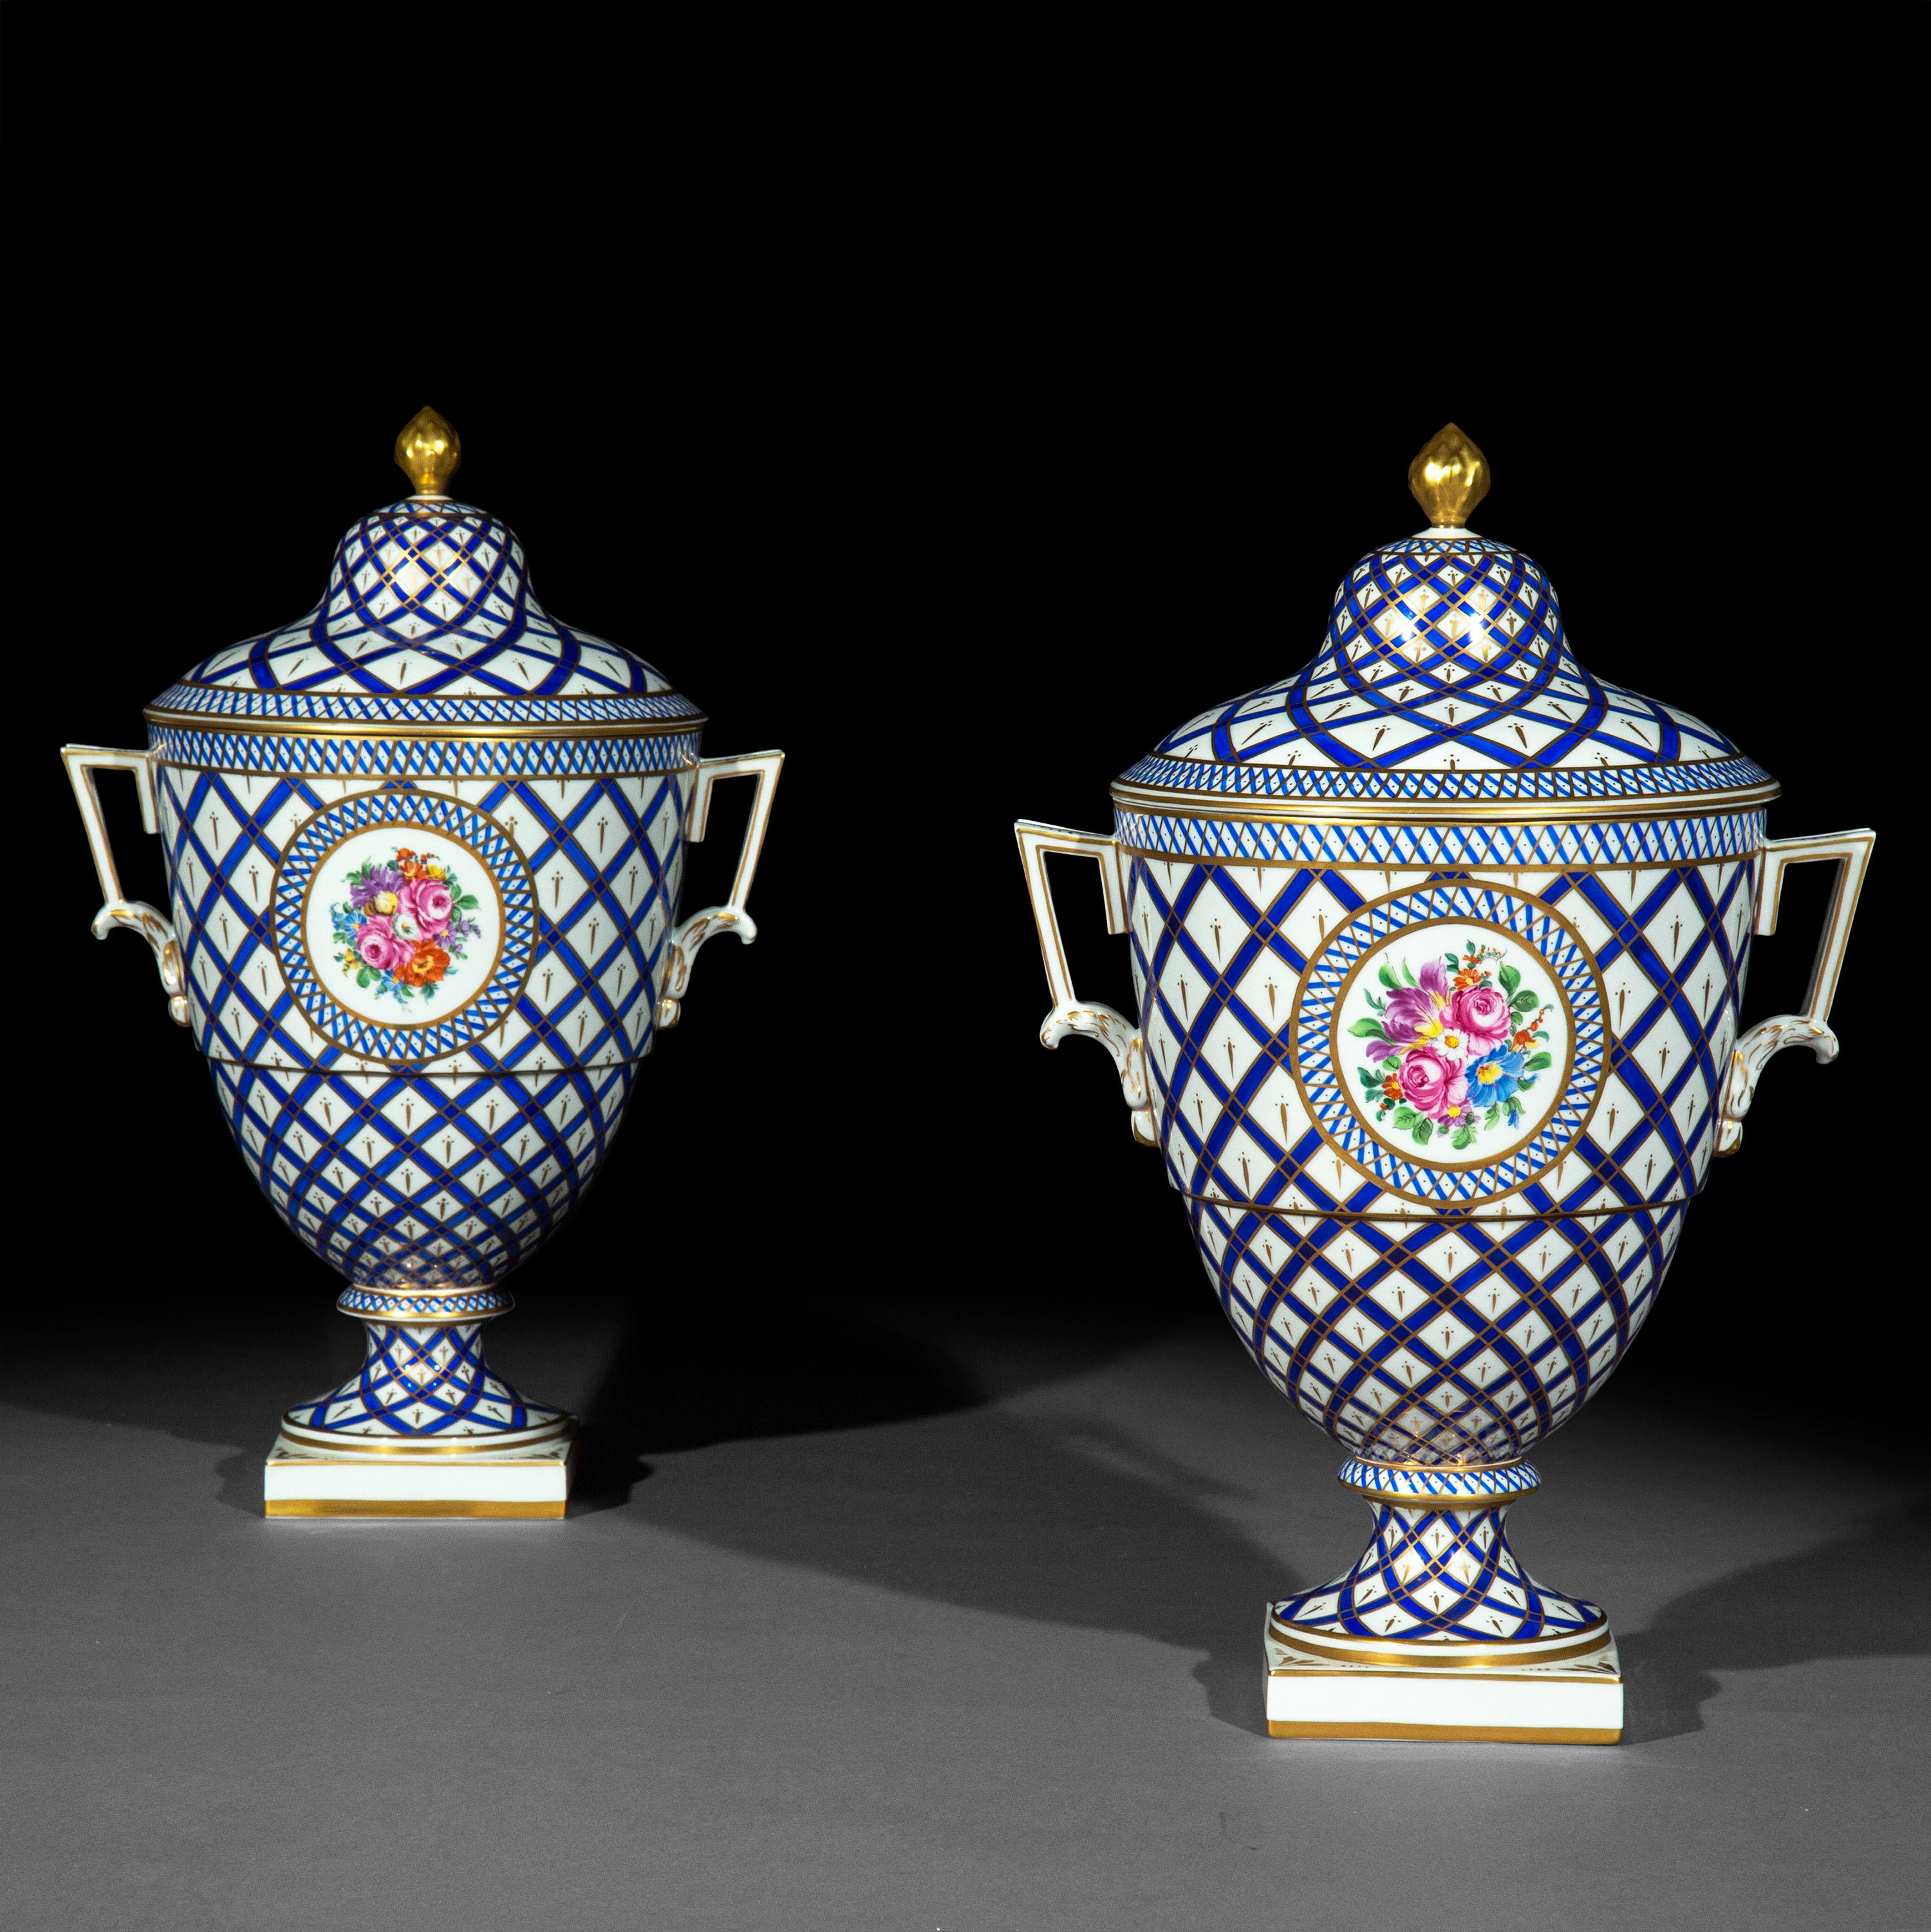 Paire de vases en porcelaine néoclassique superbement décoratifs, peints à la main en bleu et blanc et dorés sur toute la surface.

Allemagne, début du 20e siècle

Nous aimons les couleurs succulentes et la complexité des peintures miniatures.
   